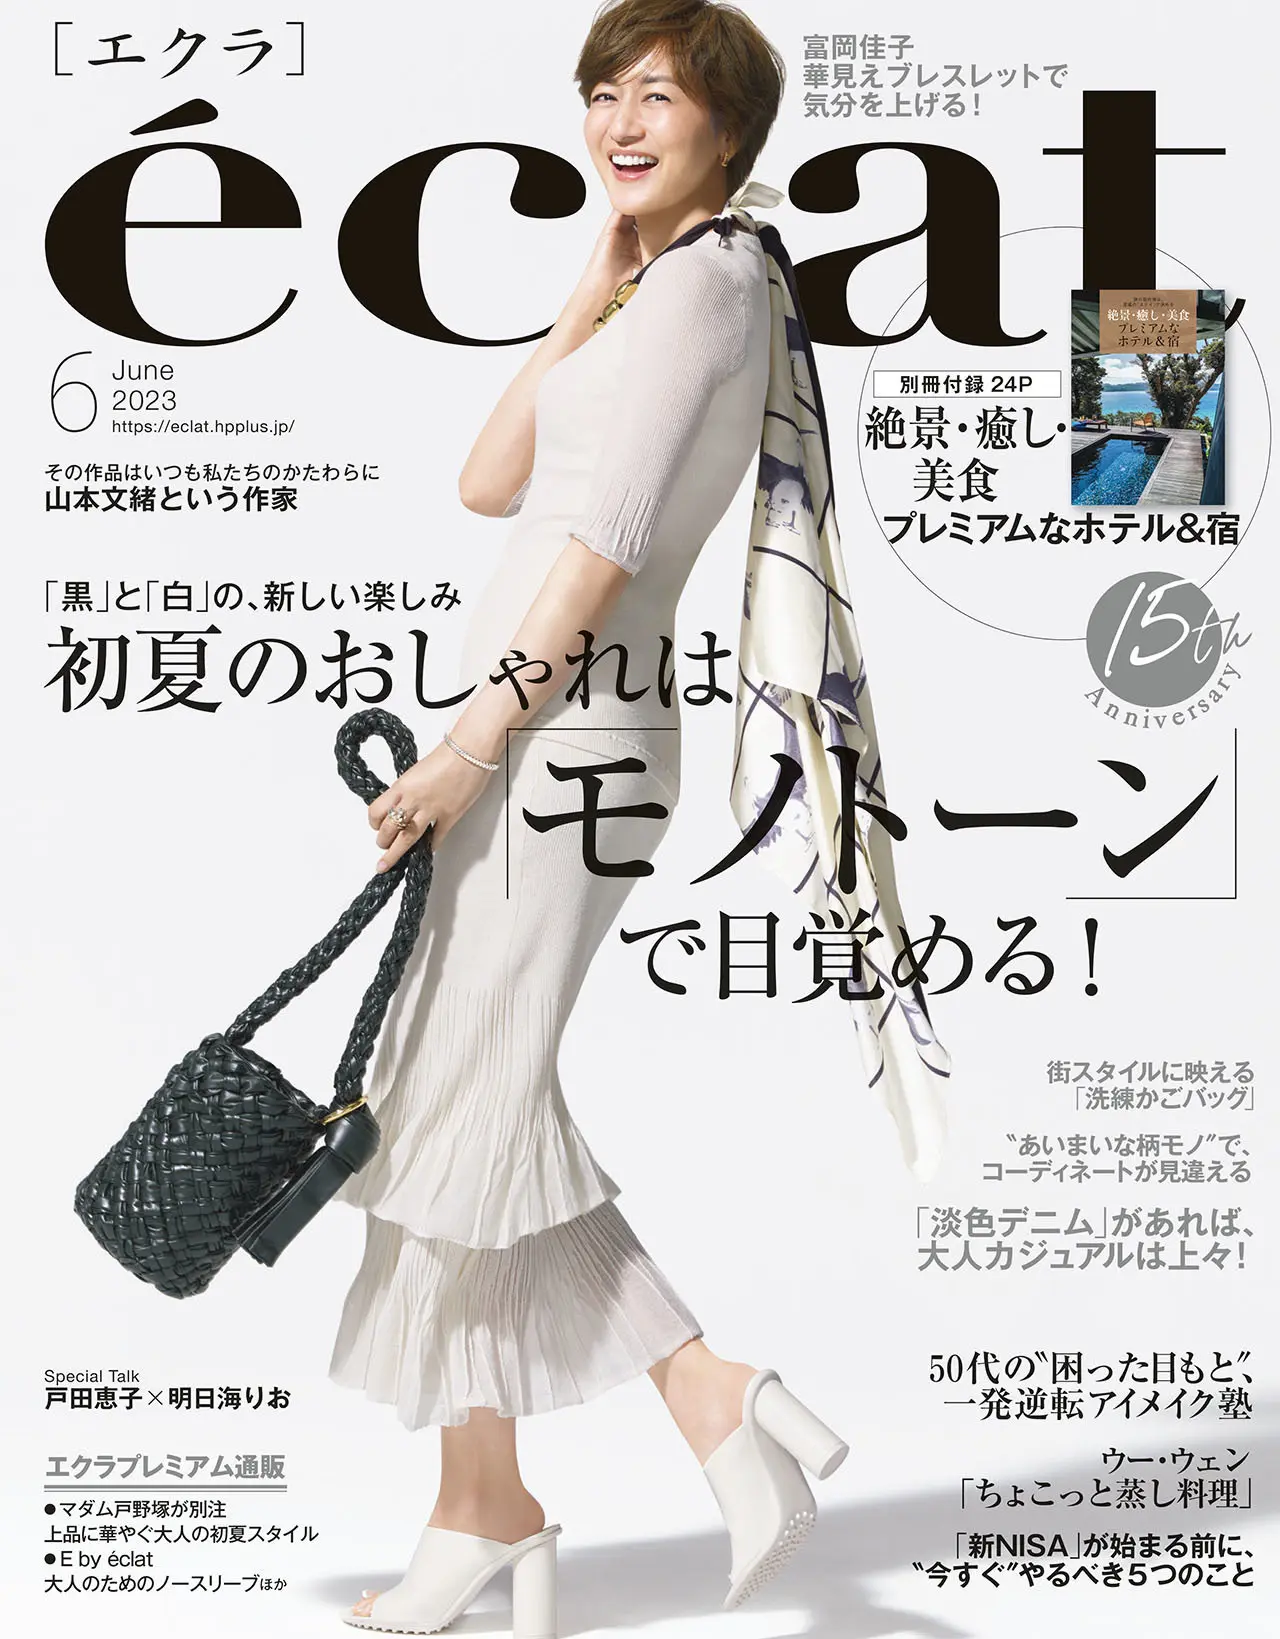 エクラ6月号表紙。カバーモデルは富岡佳子さん。